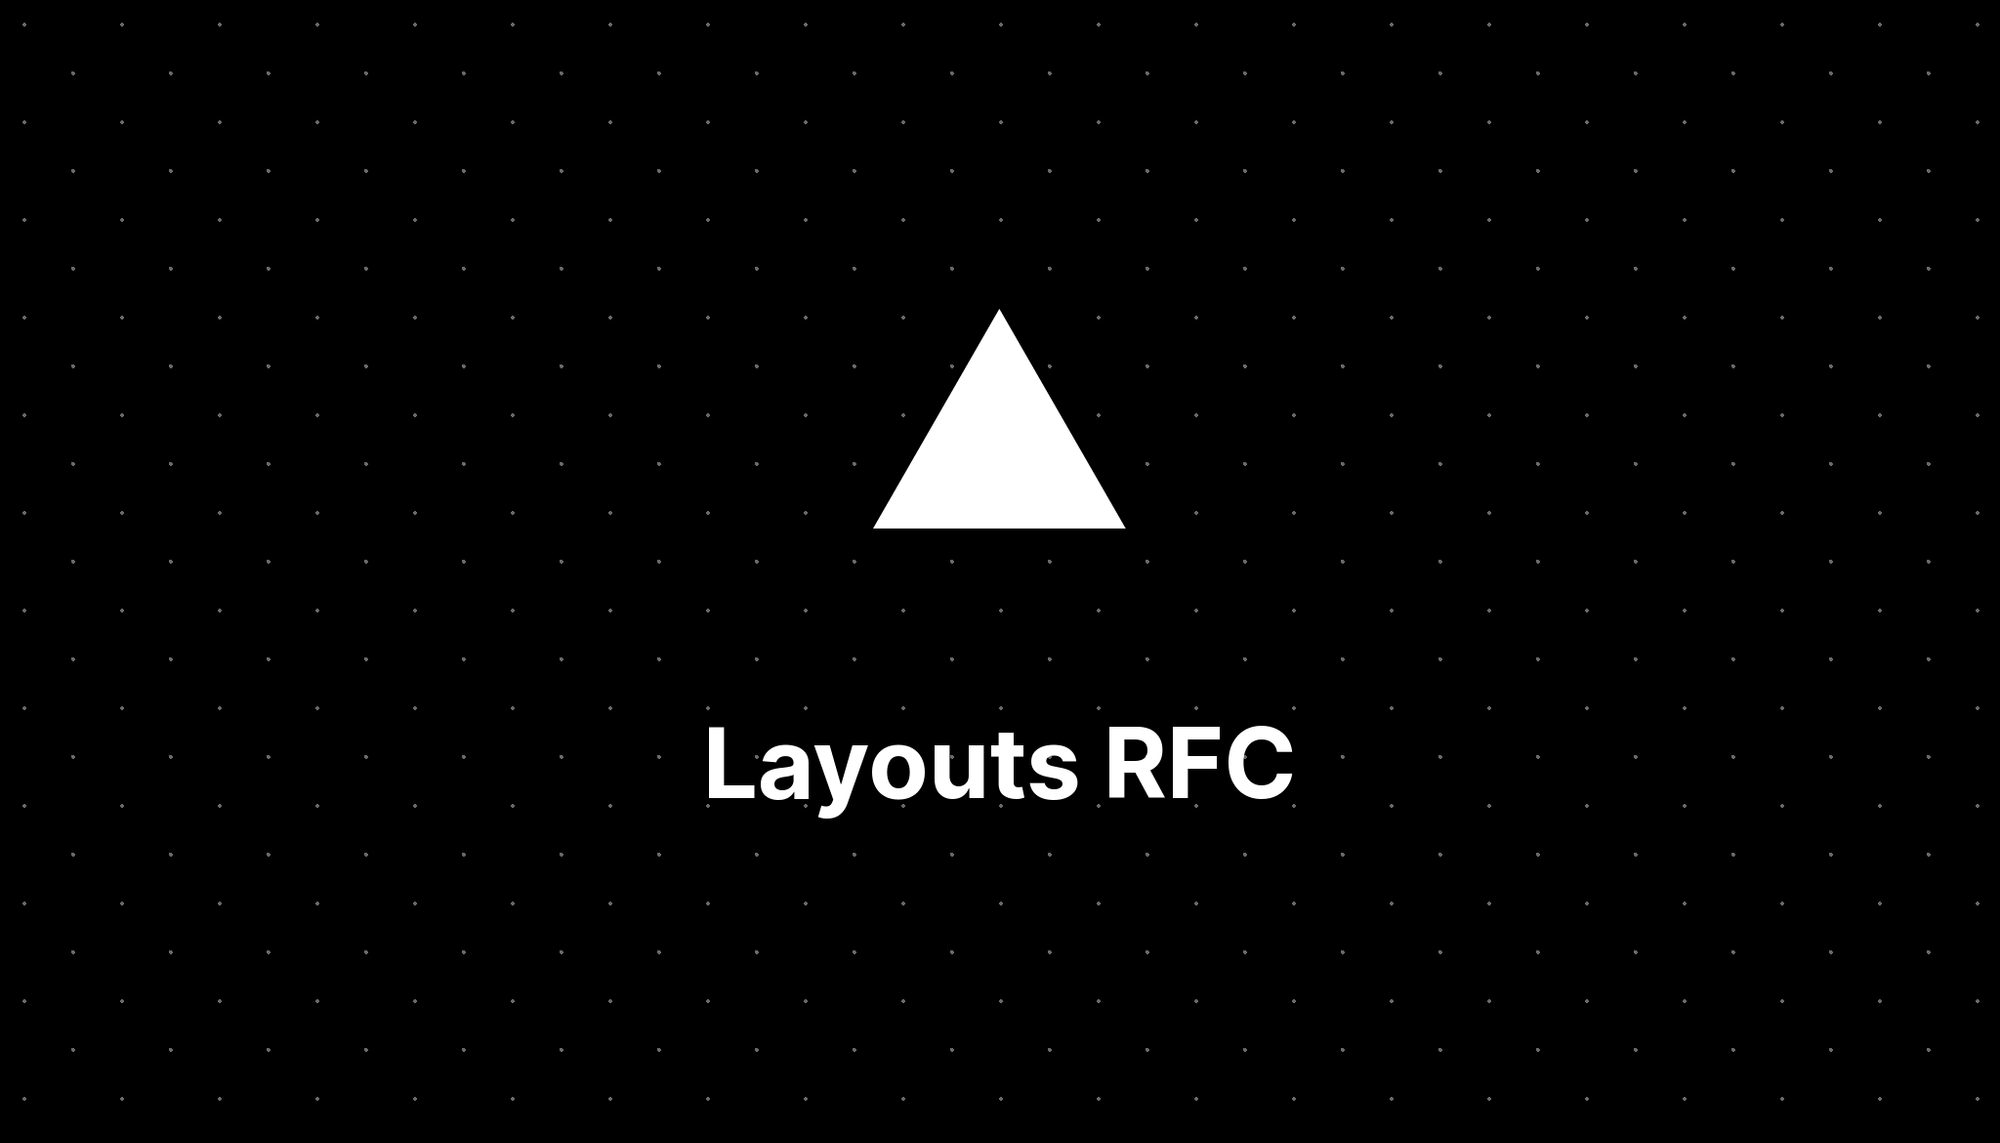 Layouts RFC